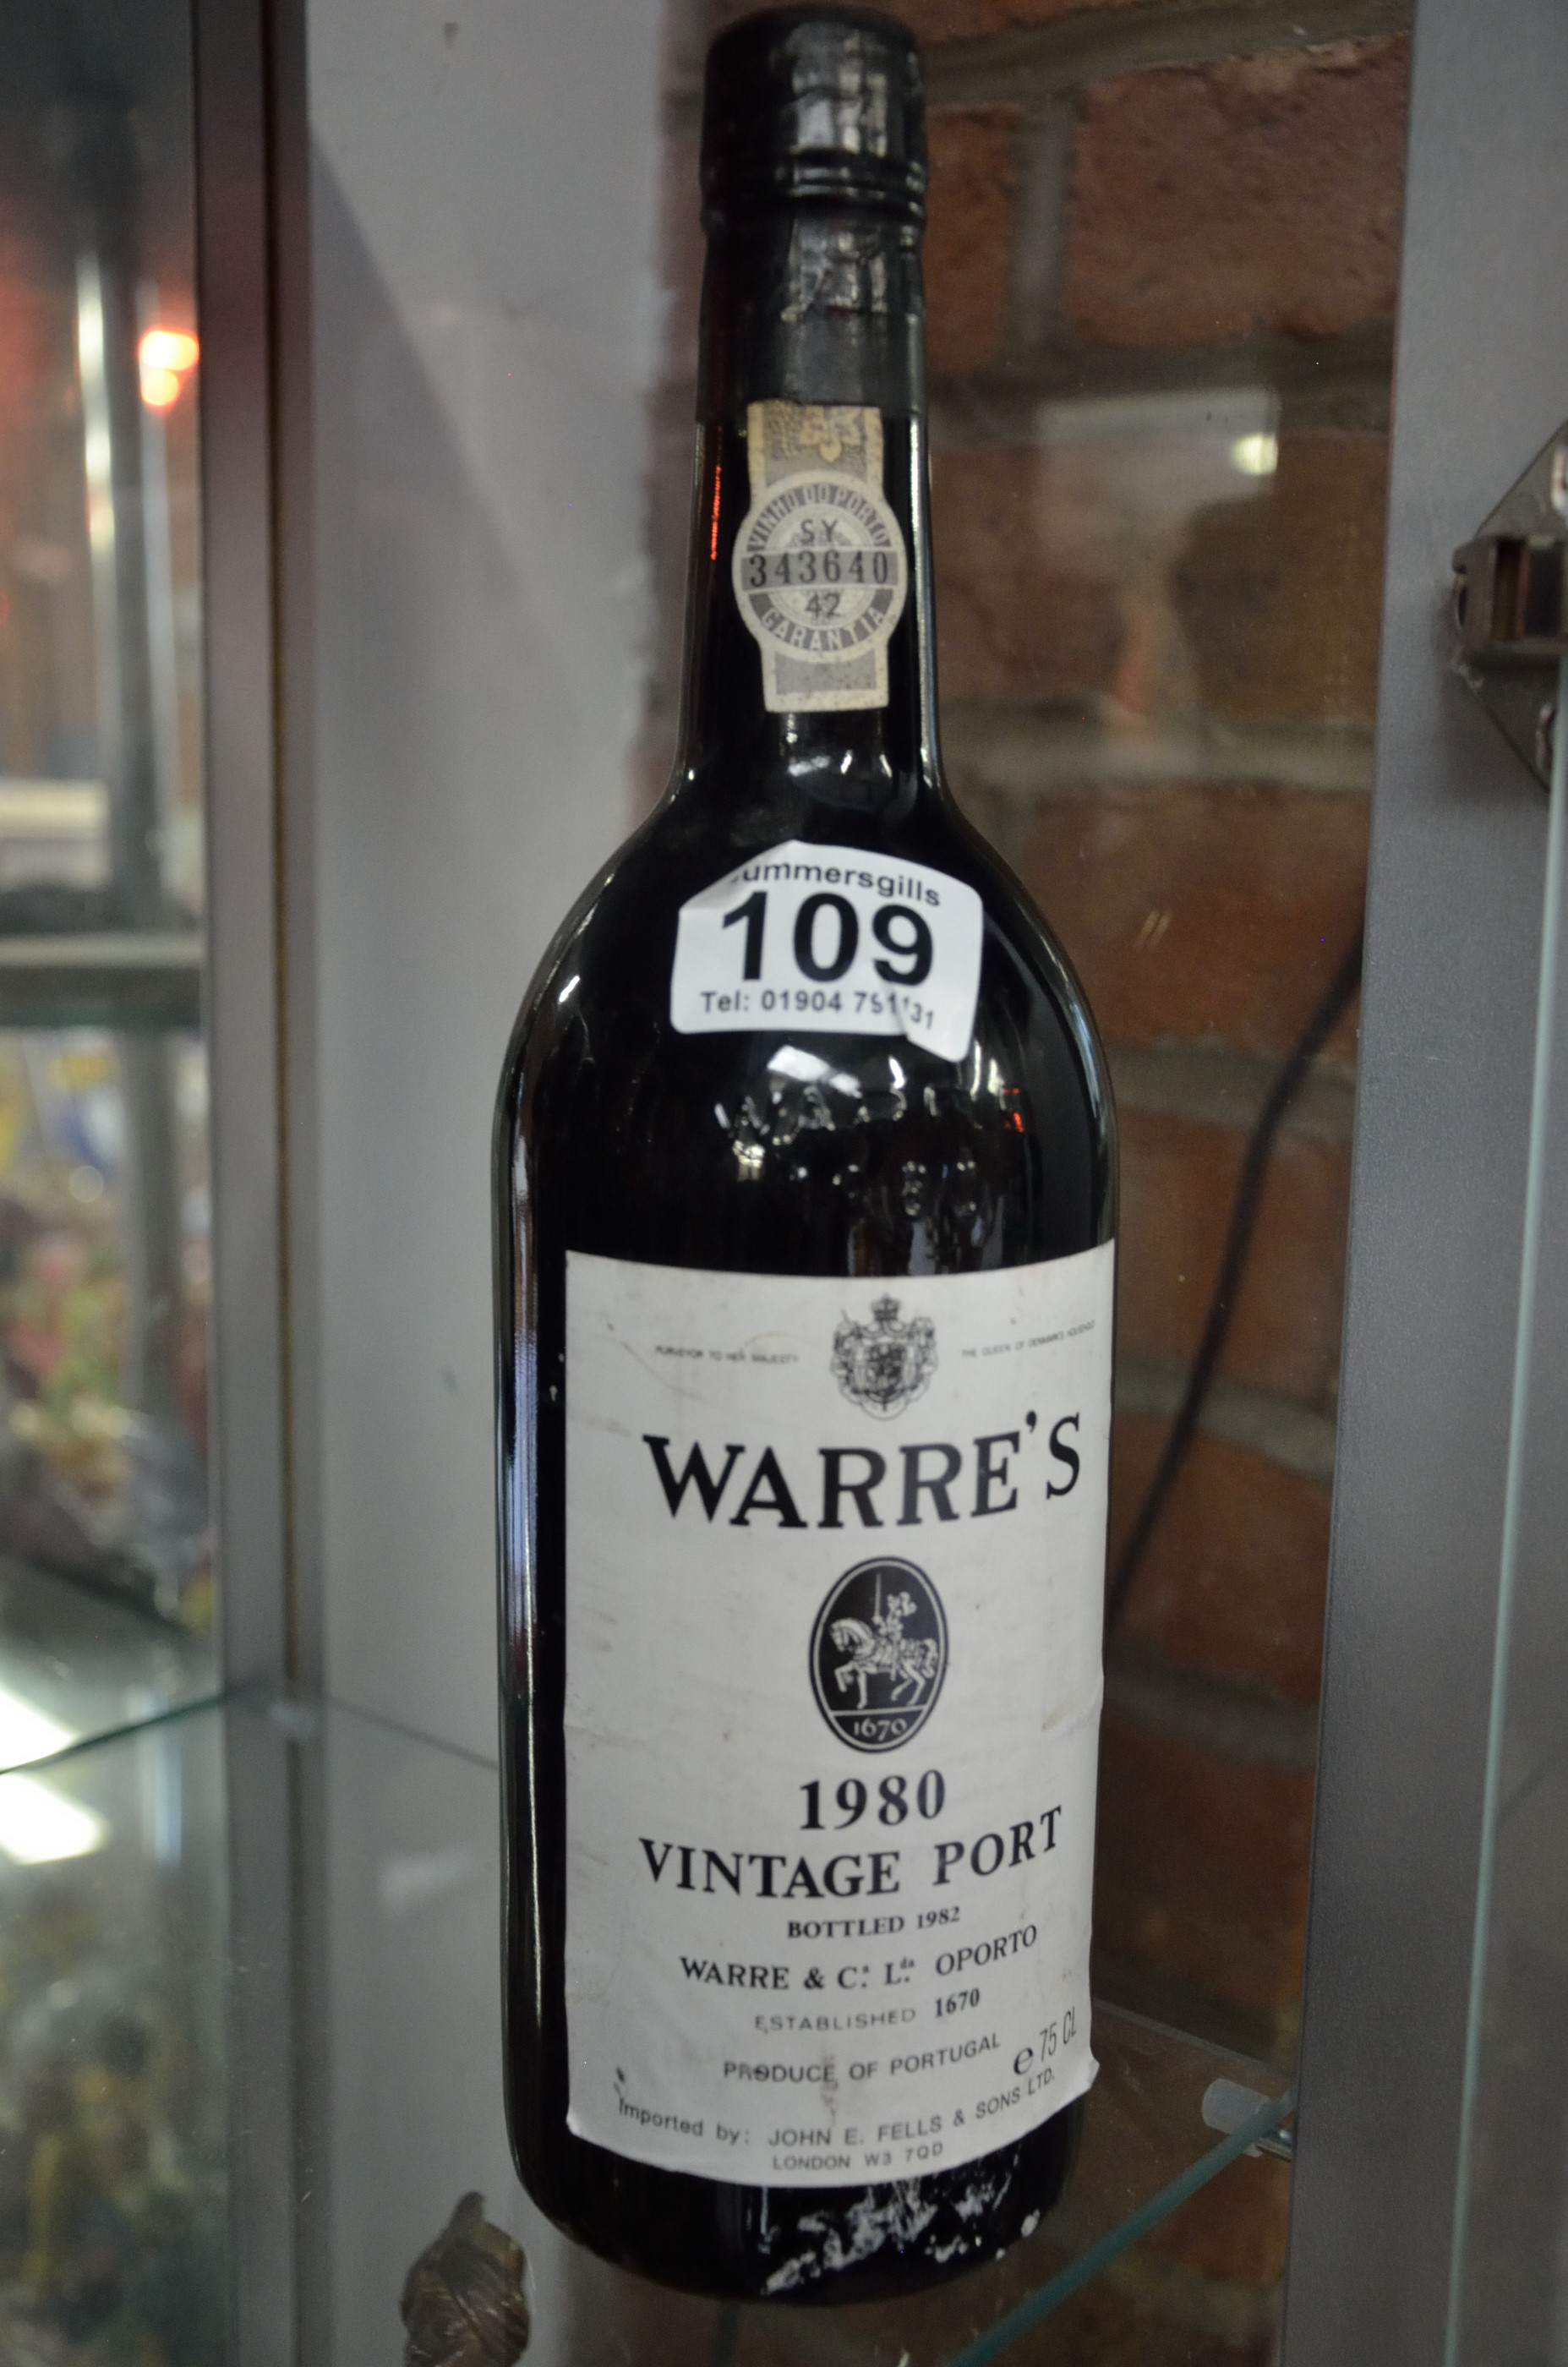 Warre's 1980 bottle of vintage port